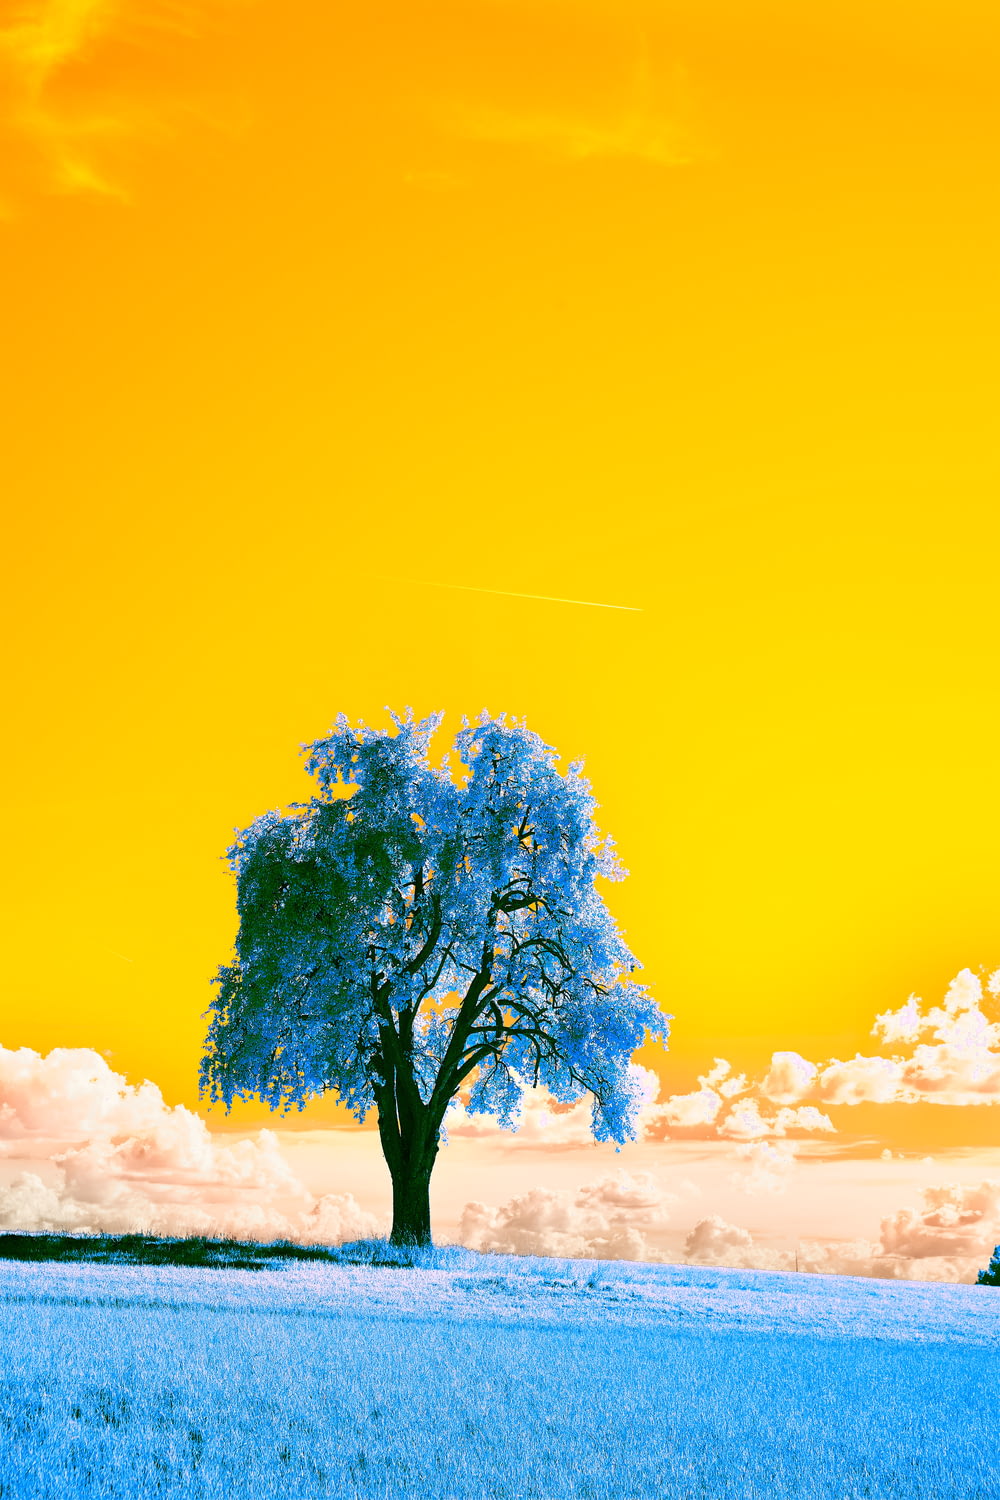 albero verde sotto il cielo blu durante il giorno